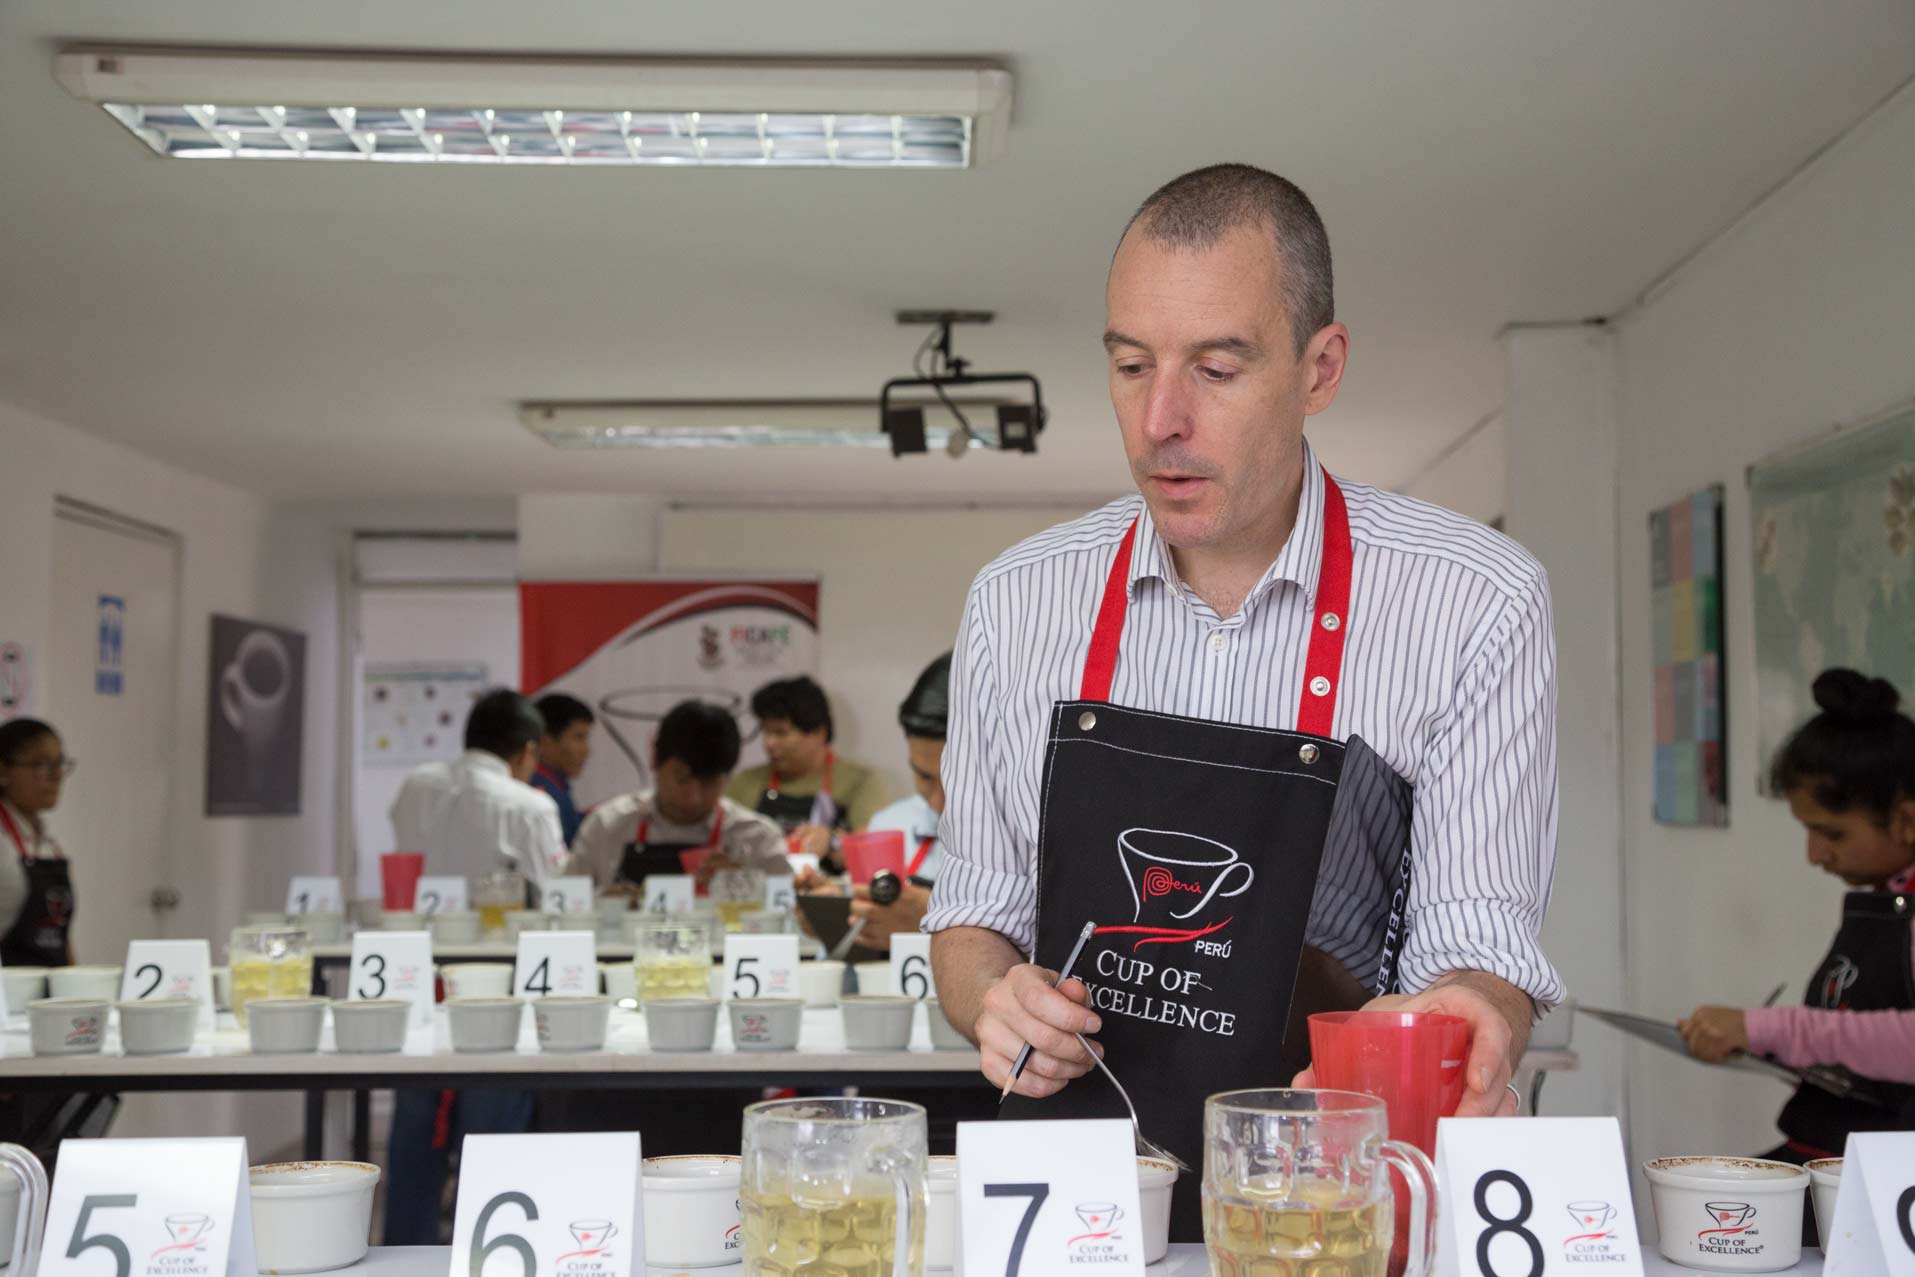 John Thompson: “Hay calidad y diversidad de sabores en cafés peruanos”